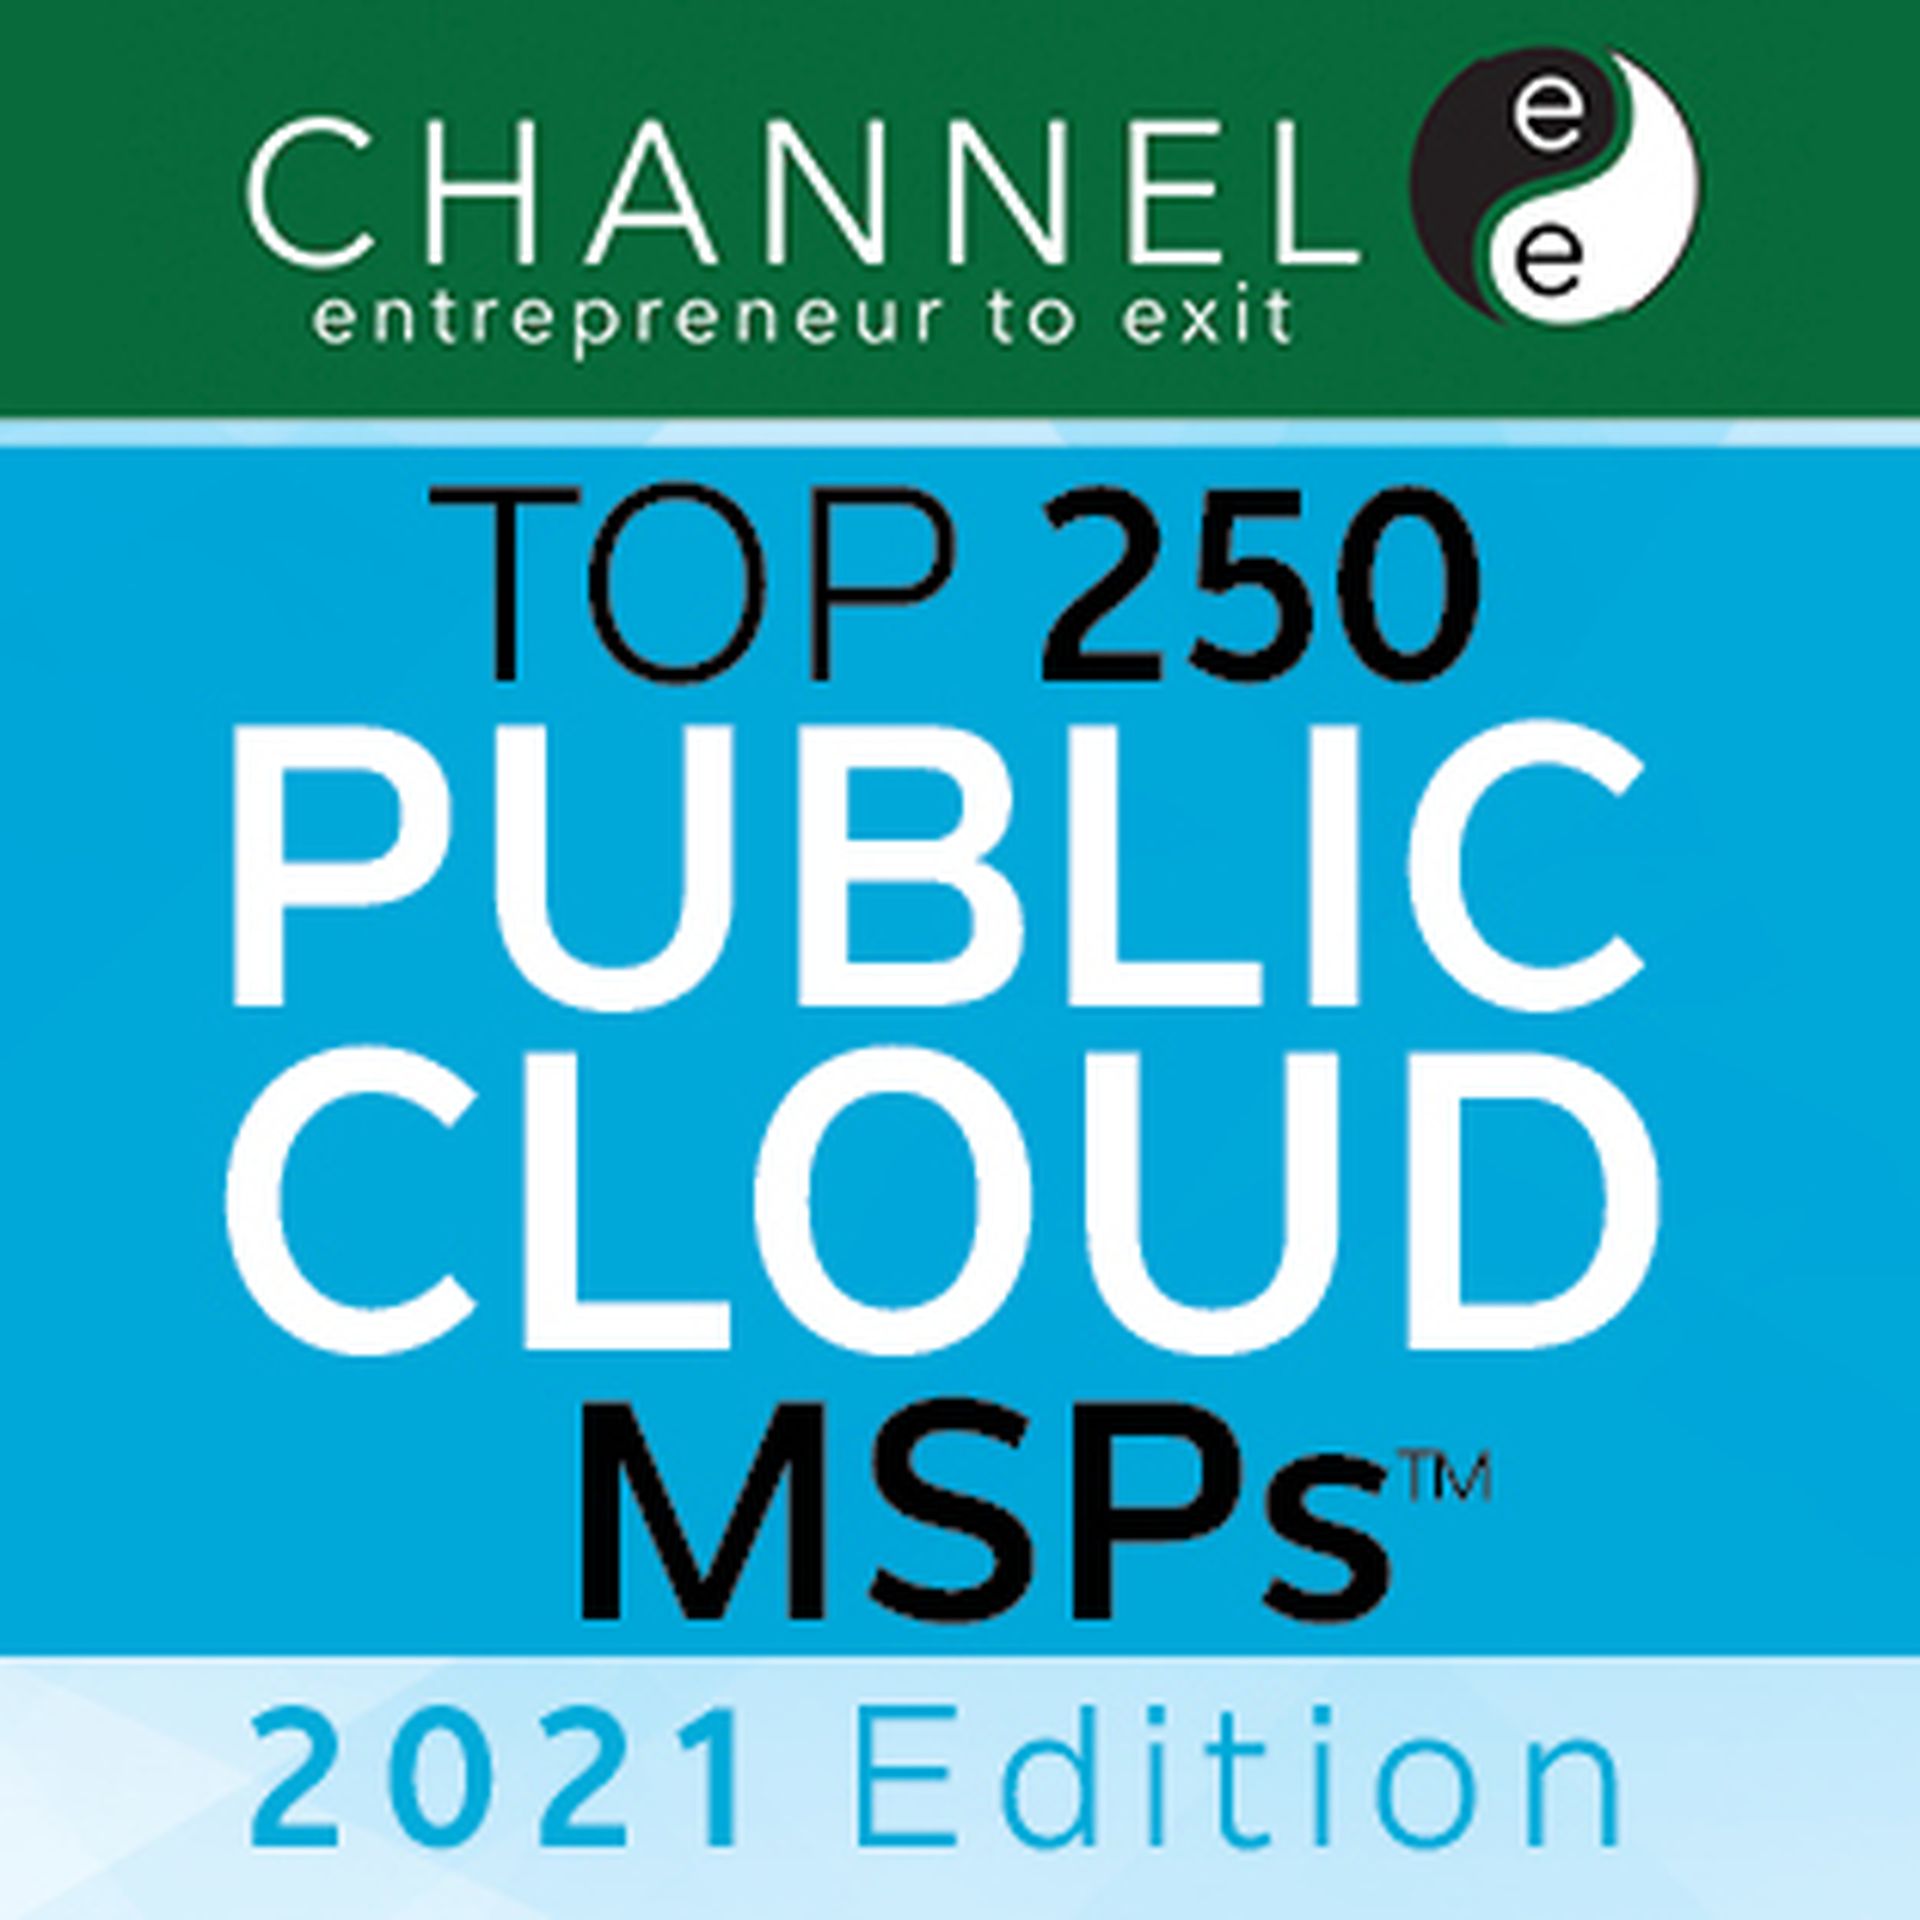 Top 250 Public Cloud MSPs 2021 Edition